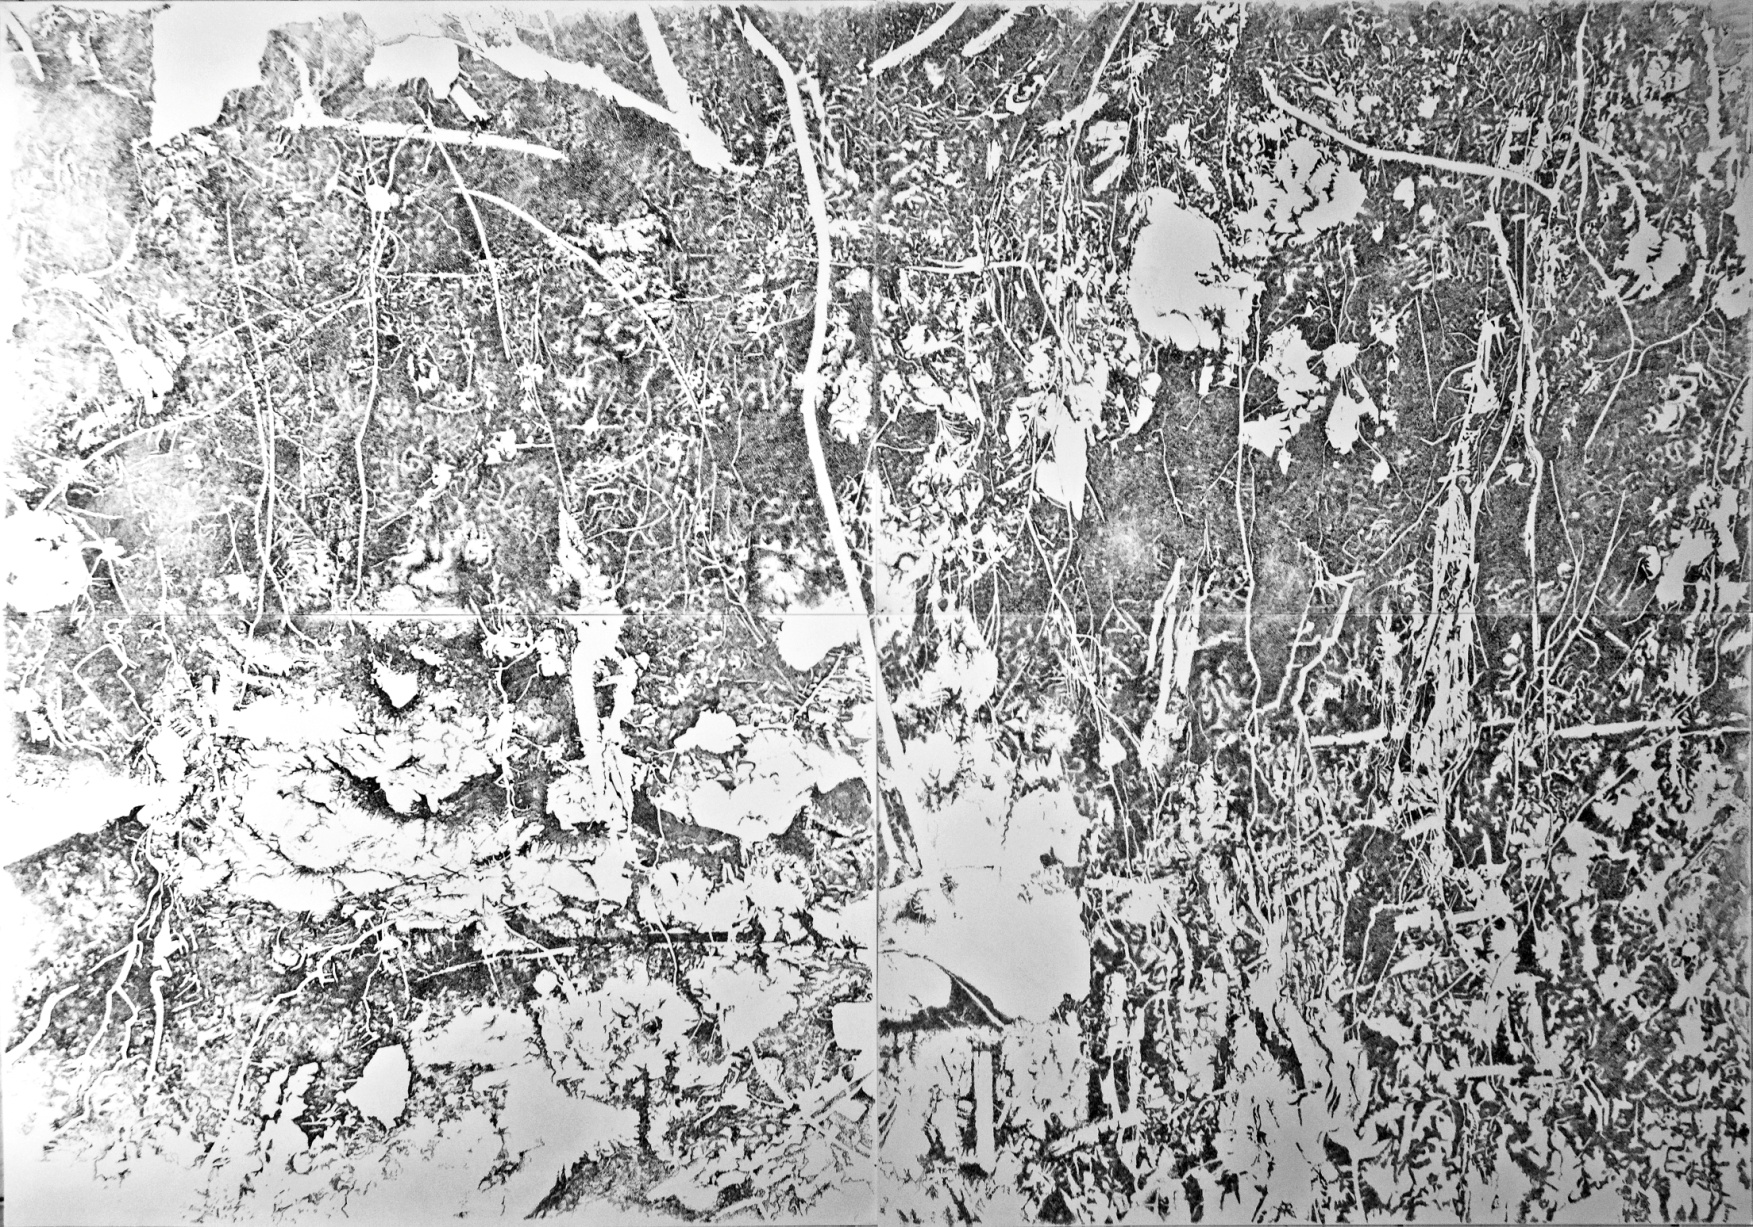 “Heady Roots” - Polyptyque. Quatre dessins à l’encre de Chine et feutres noirs sur papier, 200 x 140 cm, 2016.